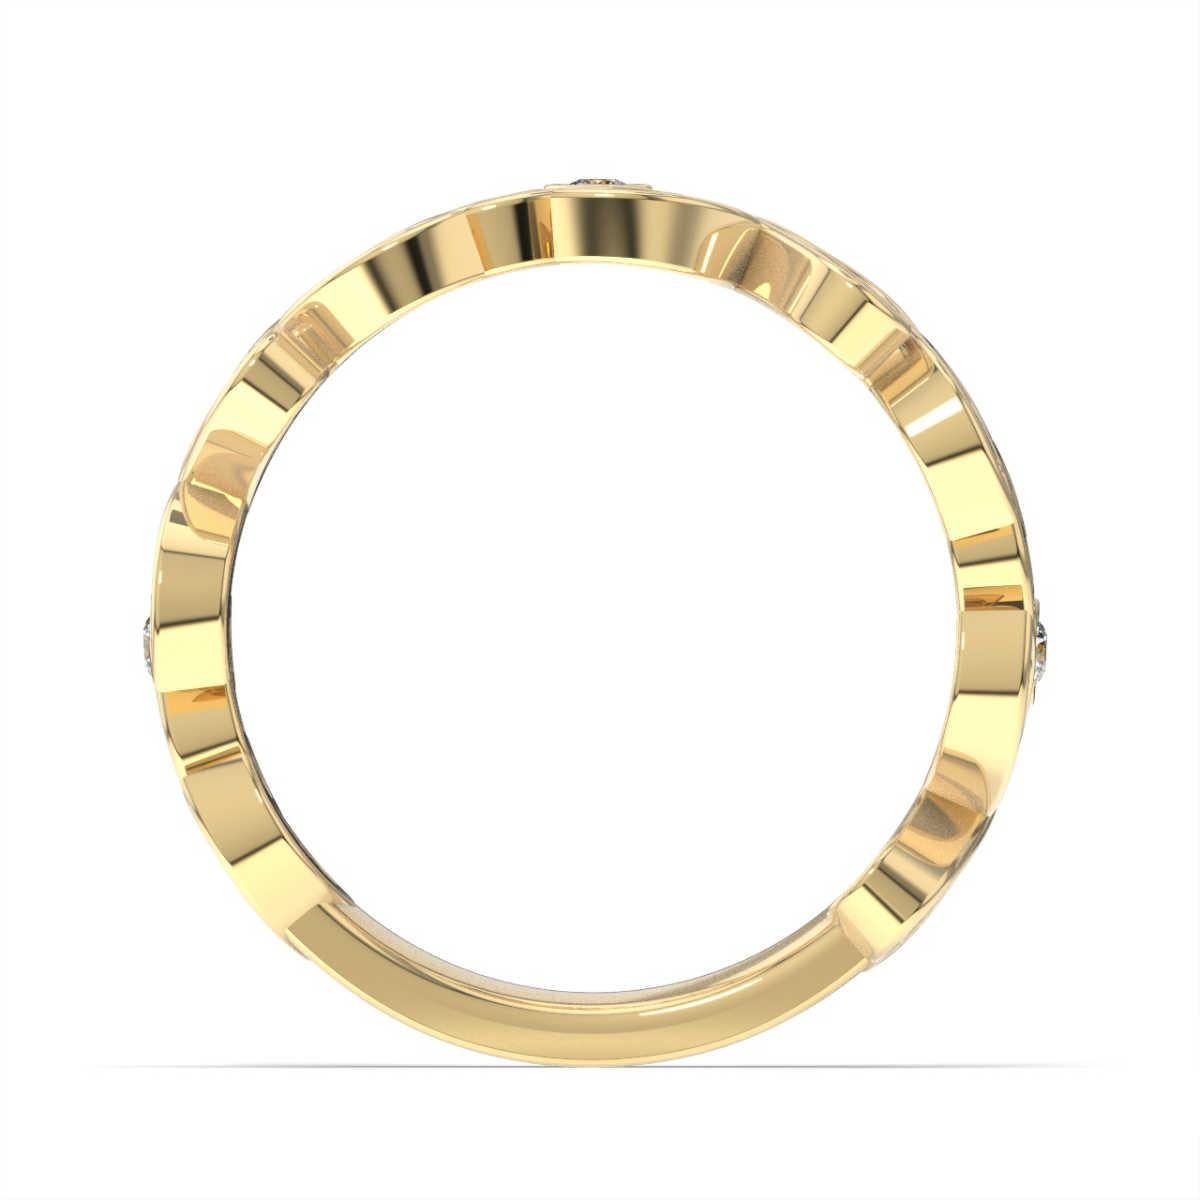 Bei diesem Ring sind runde Brillanten mit Bändern aus marquiseförmigem Metall verwoben, die einen zarten Hauch von Milgarin aufweisen. Erleben Sie den Unterschied!

Einzelheiten zum Produkt: 

Farbe des zentralen Edelsteins: WEISS
Seite Edelstein